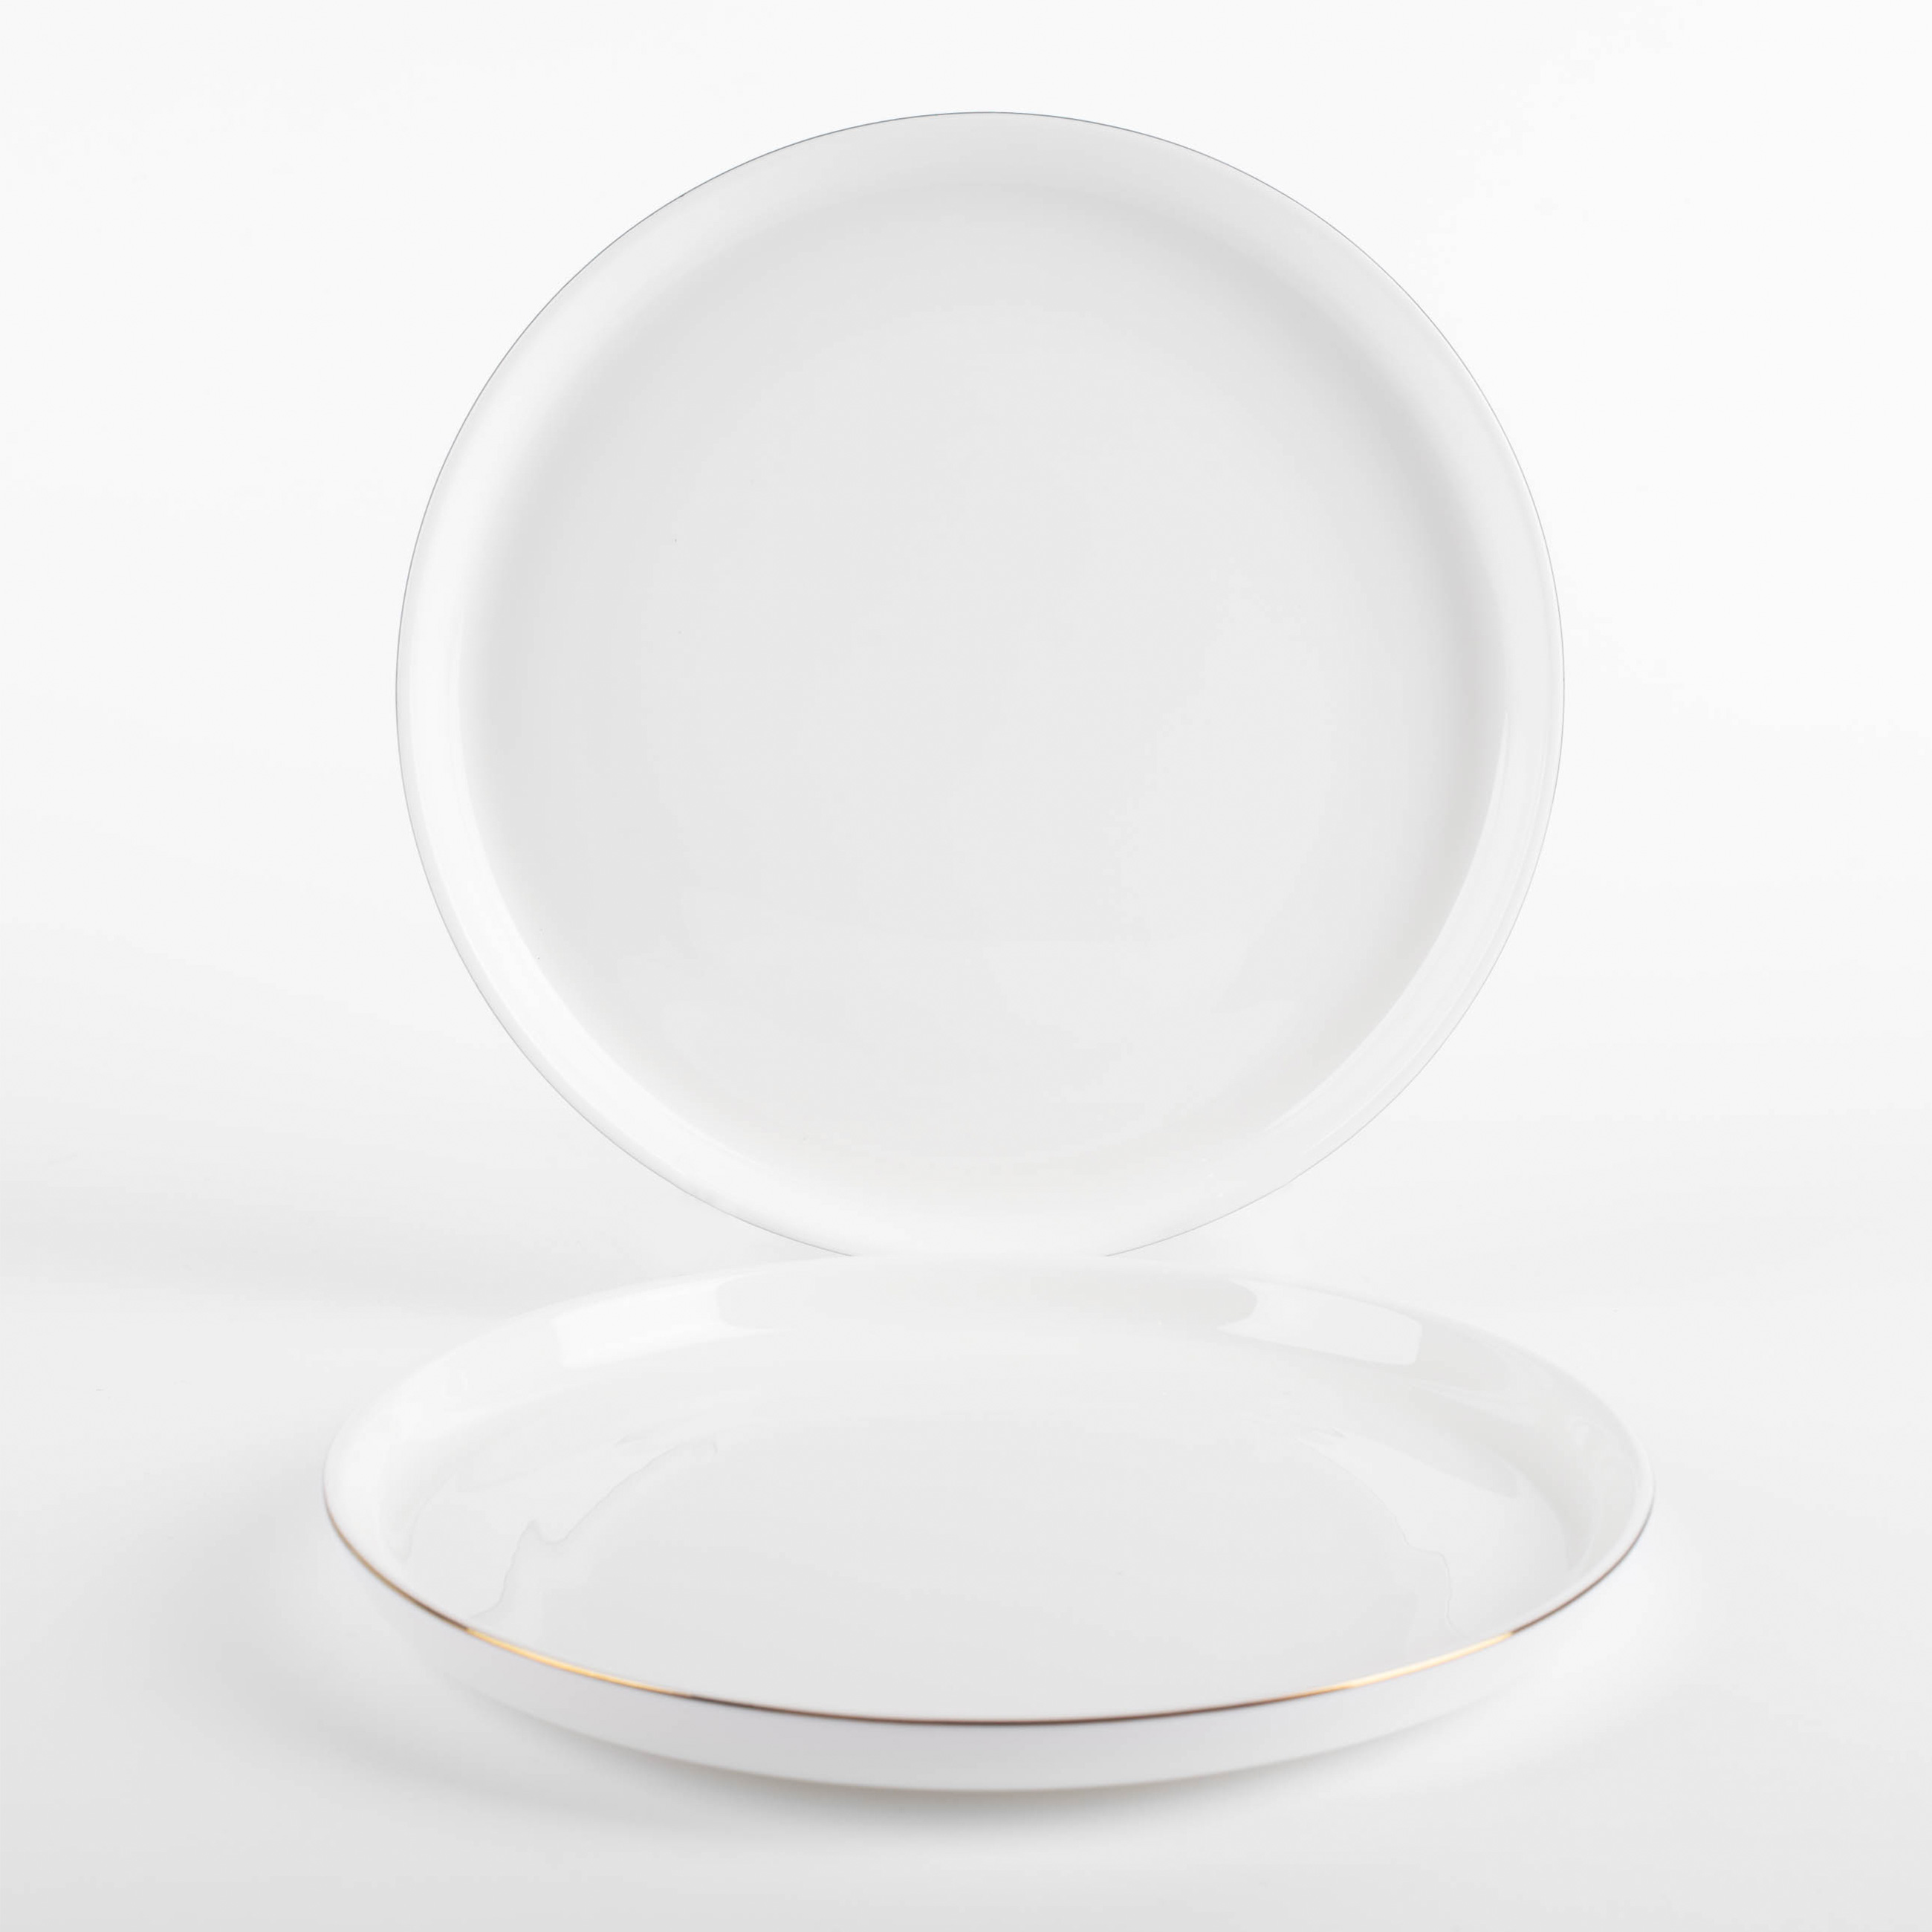 Тарелка десертная, 20 см, 2 шт, фарфор F, белая, Ideal gold изображение № 6